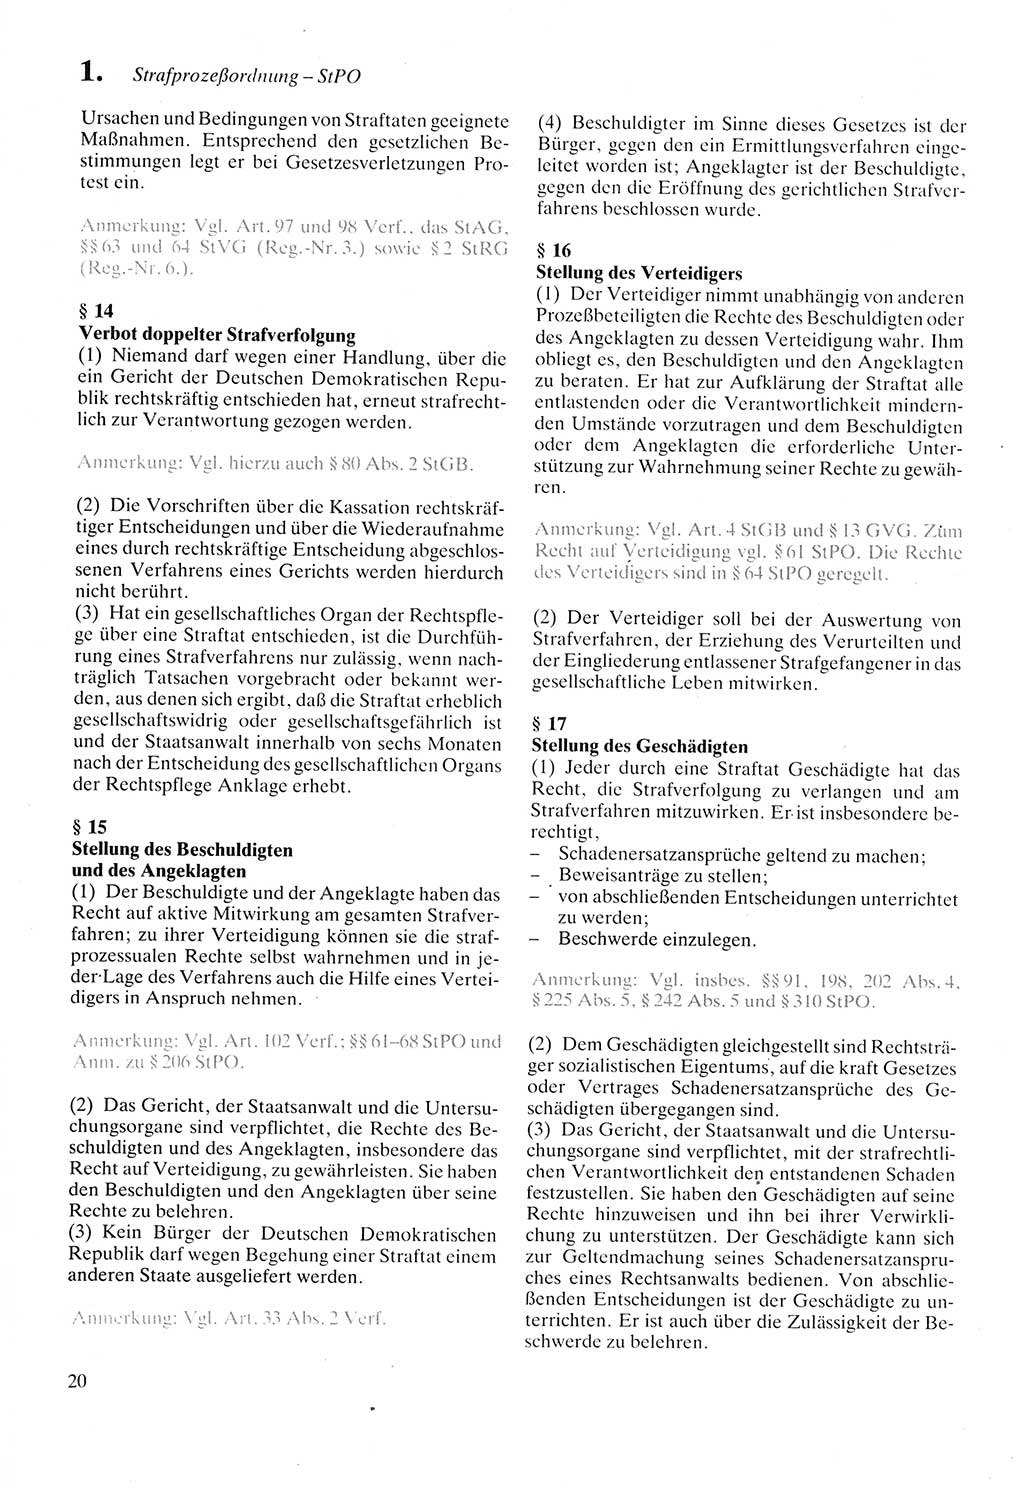 Strafprozeßordnung (StPO) der Deutschen Demokratischen Republik (DDR) sowie angrenzende Gesetze und Bestimmungen 1987, Seite 20 (StPO DDR Ges. Best. 1987, S. 20)